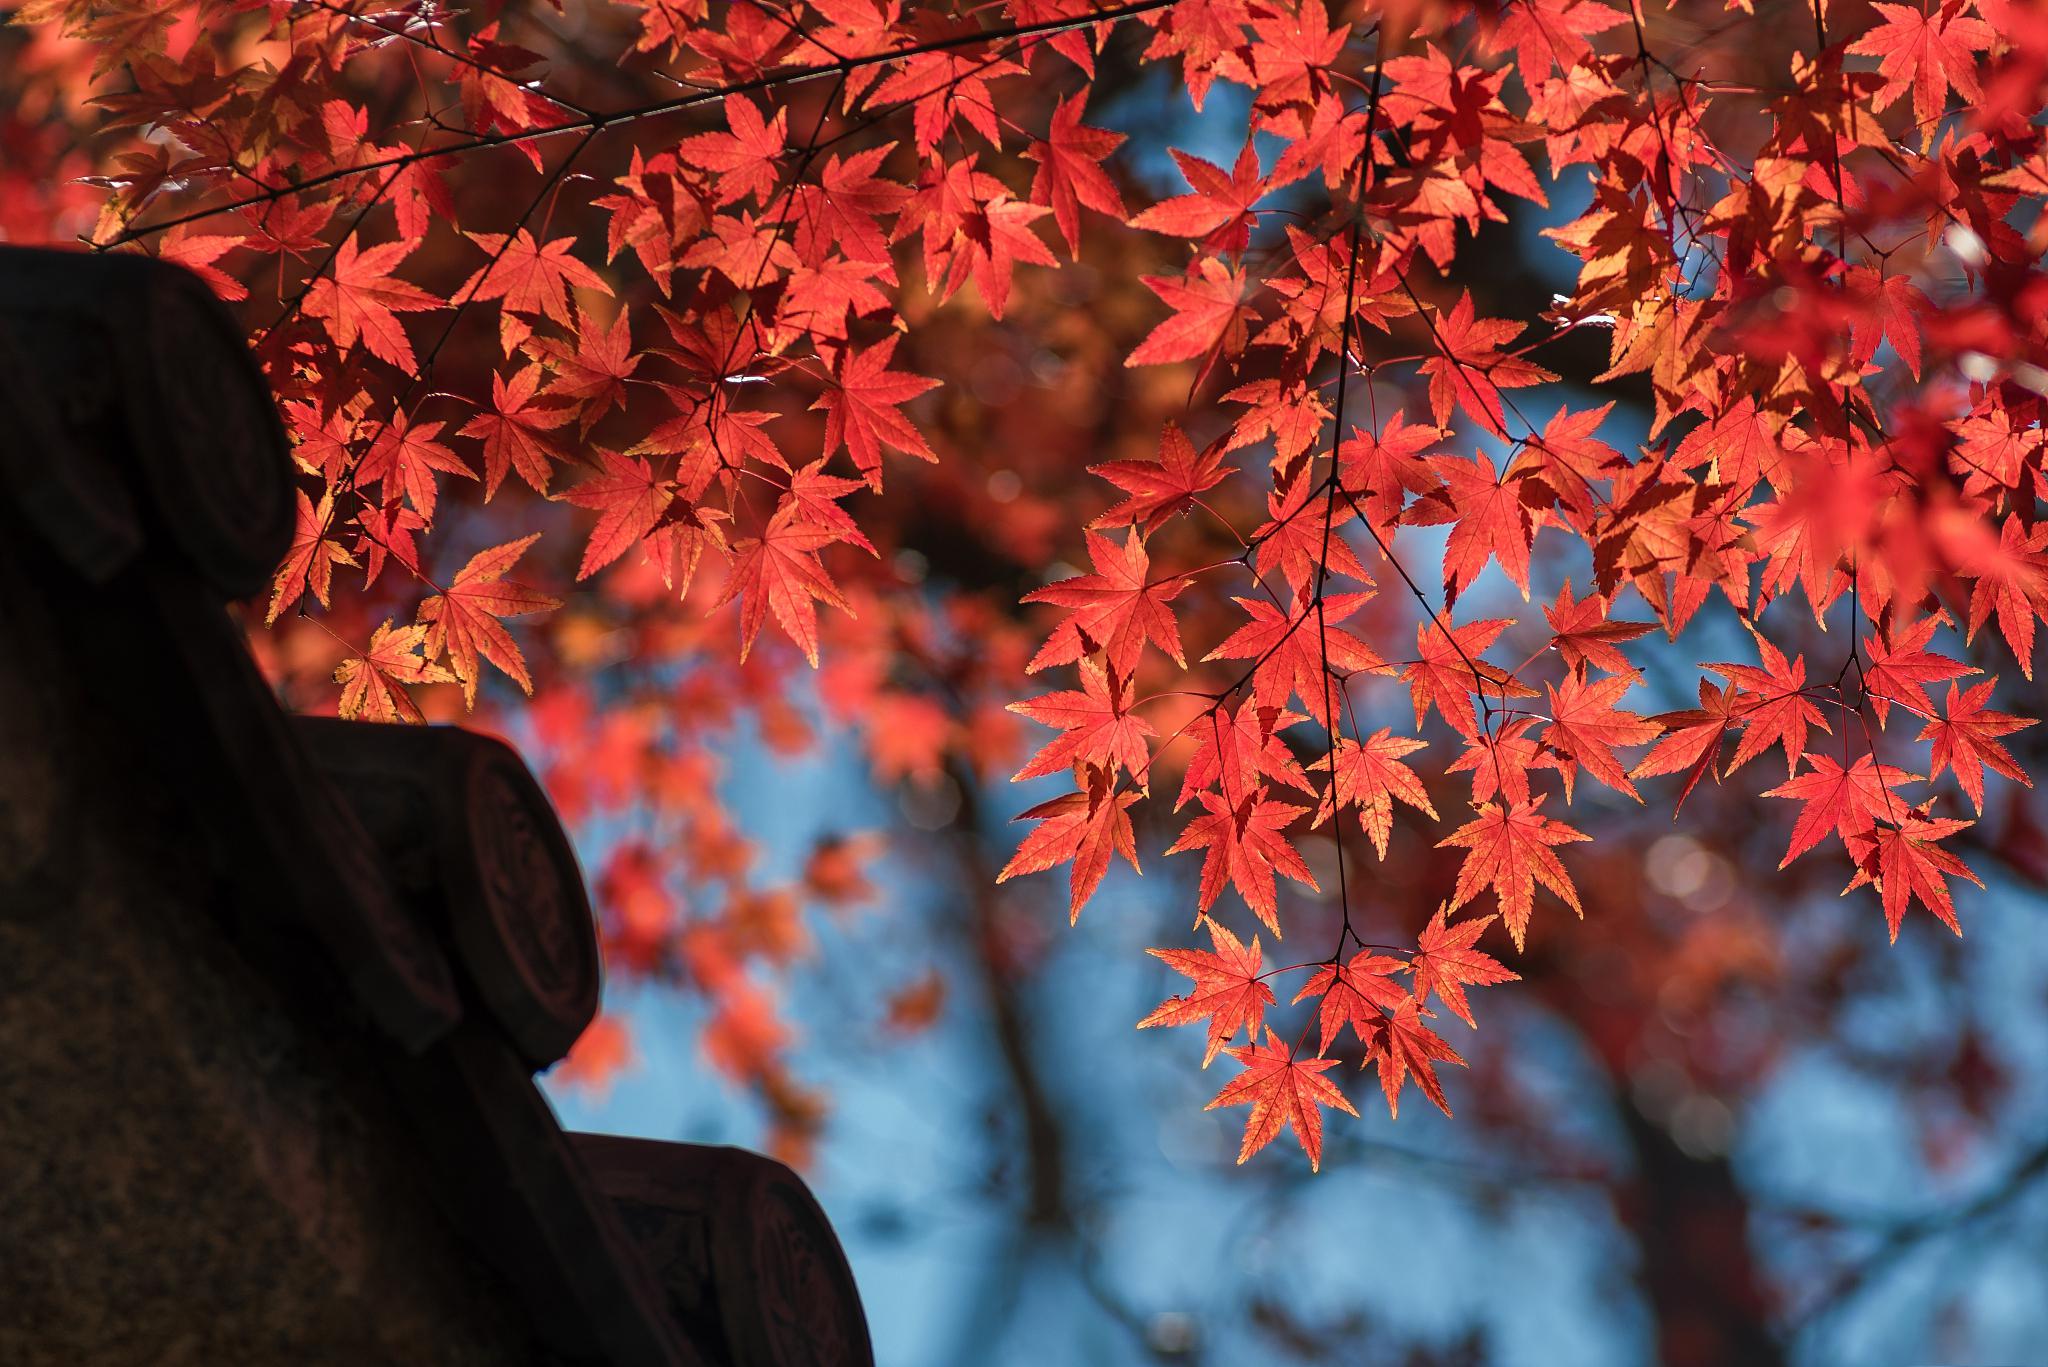 北京香山红叶最佳观赏时间 北京香山红叶是秋季的著名景色之一,每年